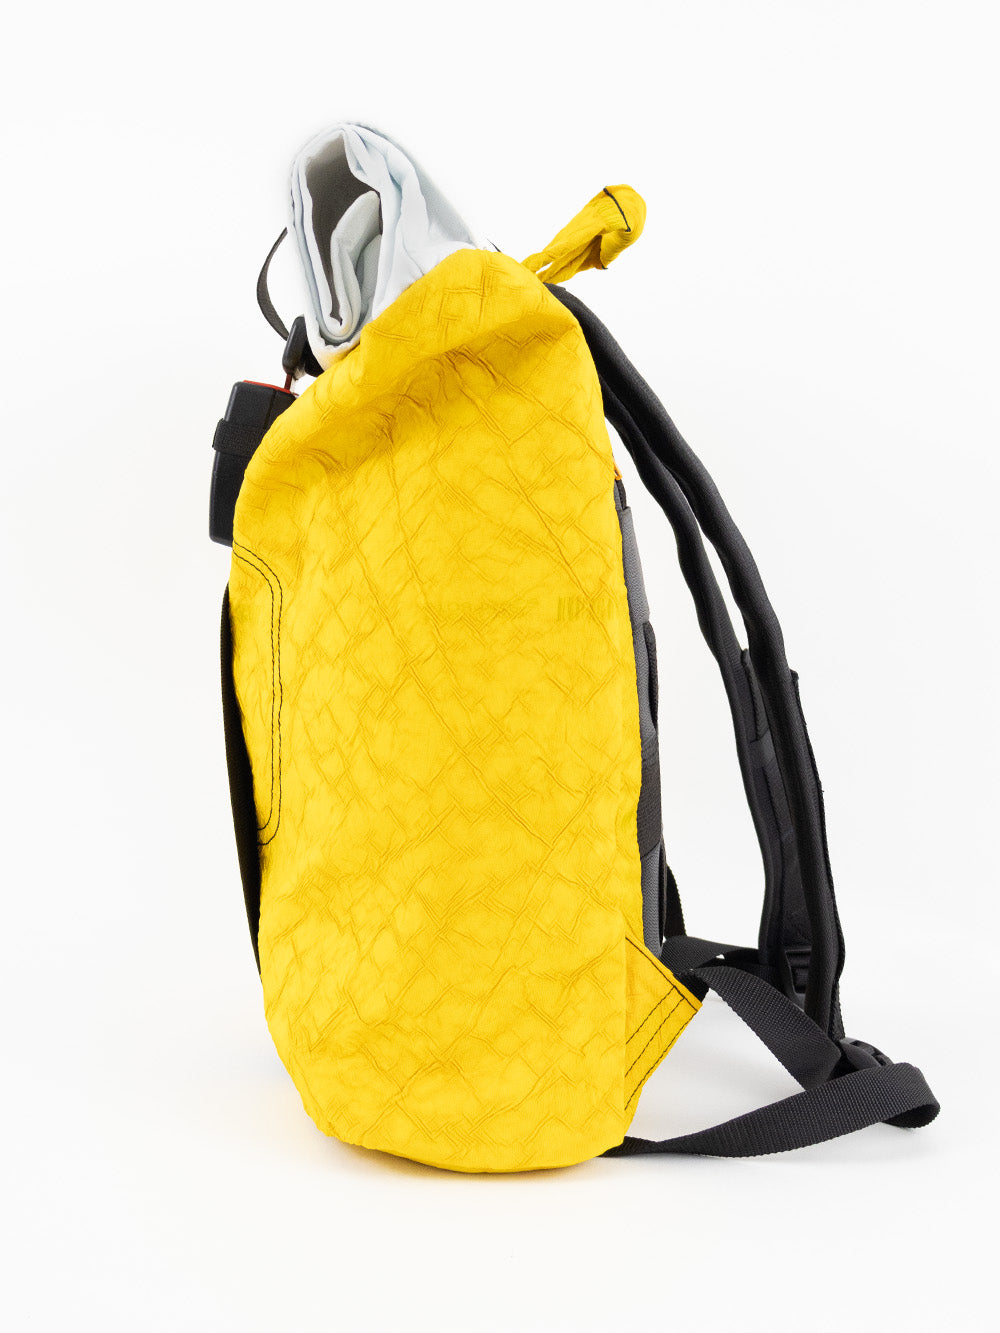 Airpaq Rucksack Rolltop - gelb/weiß gefärbt